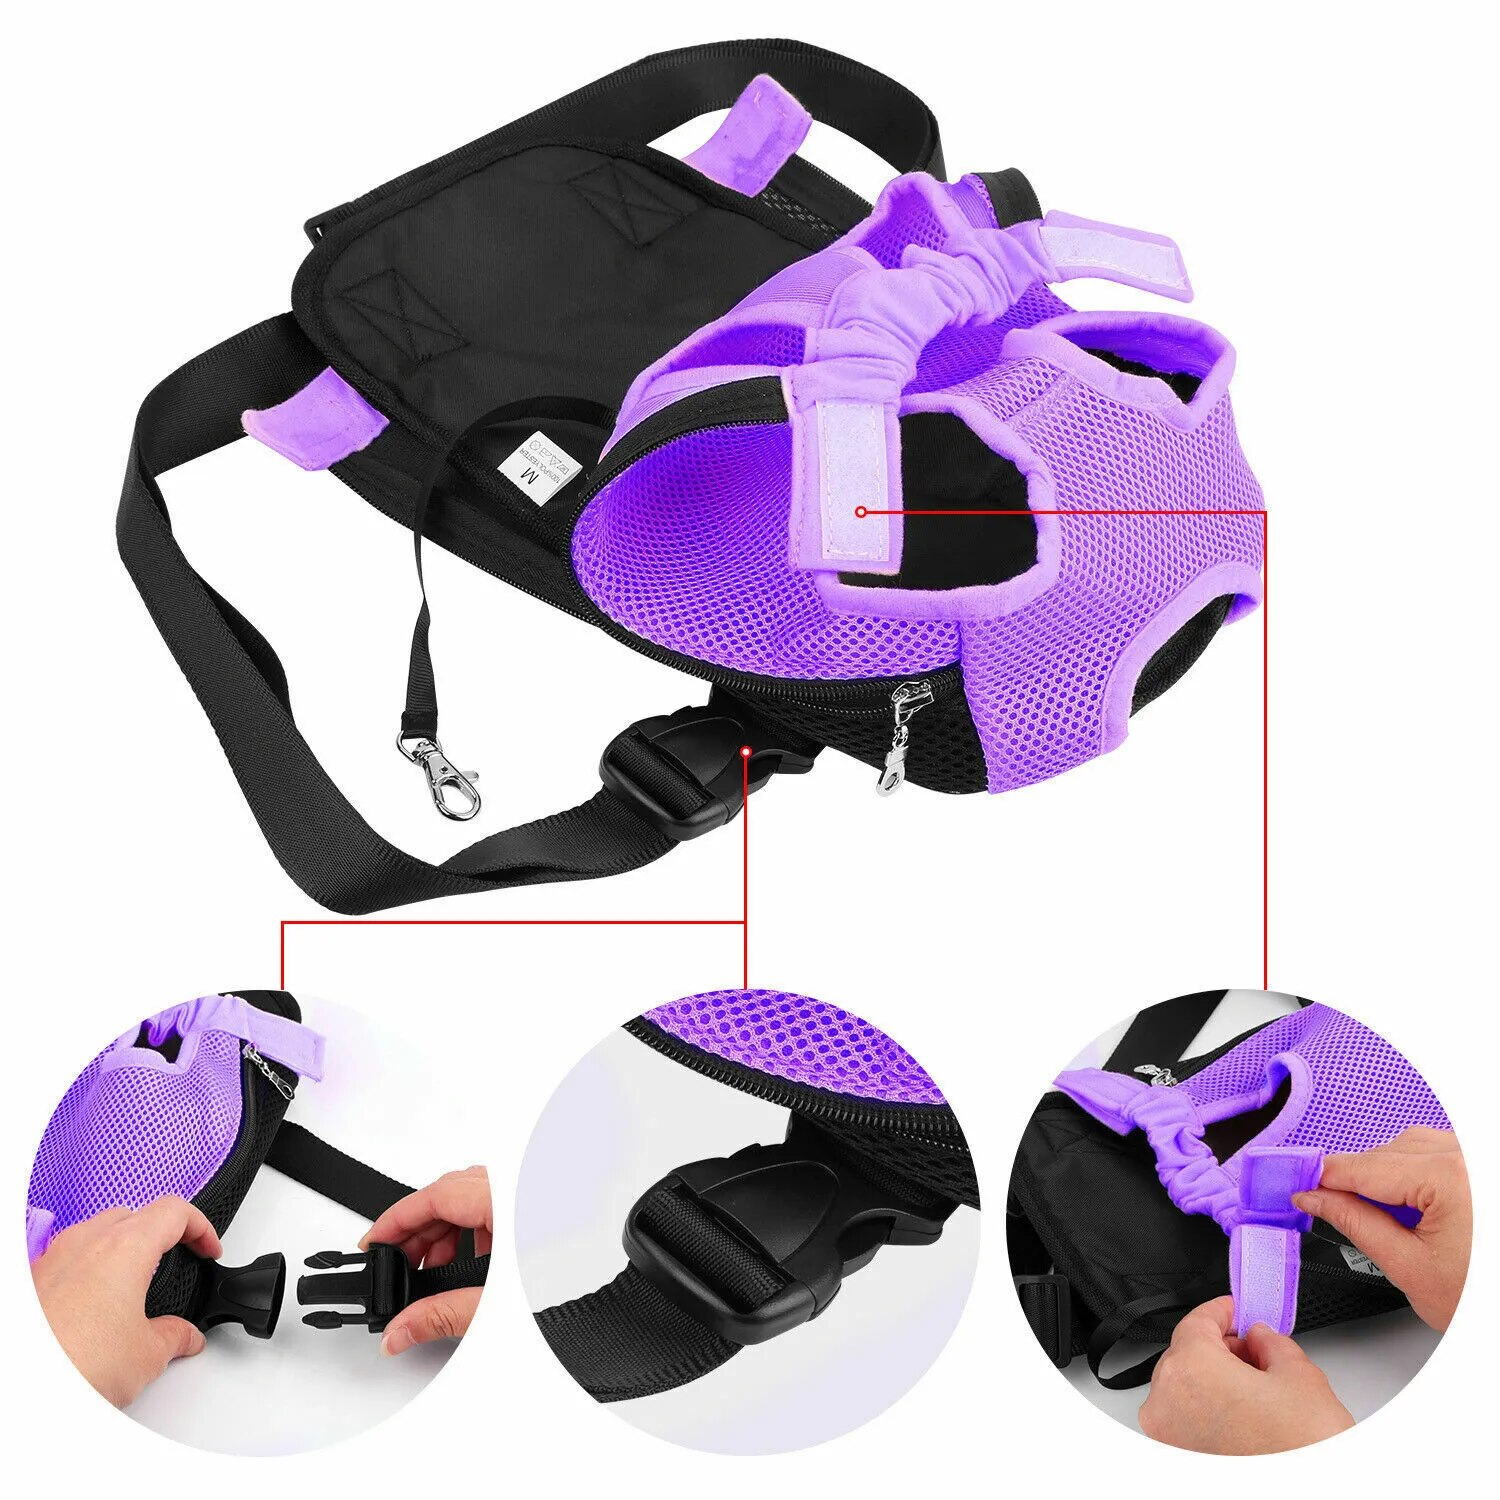 come4buy.com-Pet Dog Carrier Backpack Portable Adjustable Strap